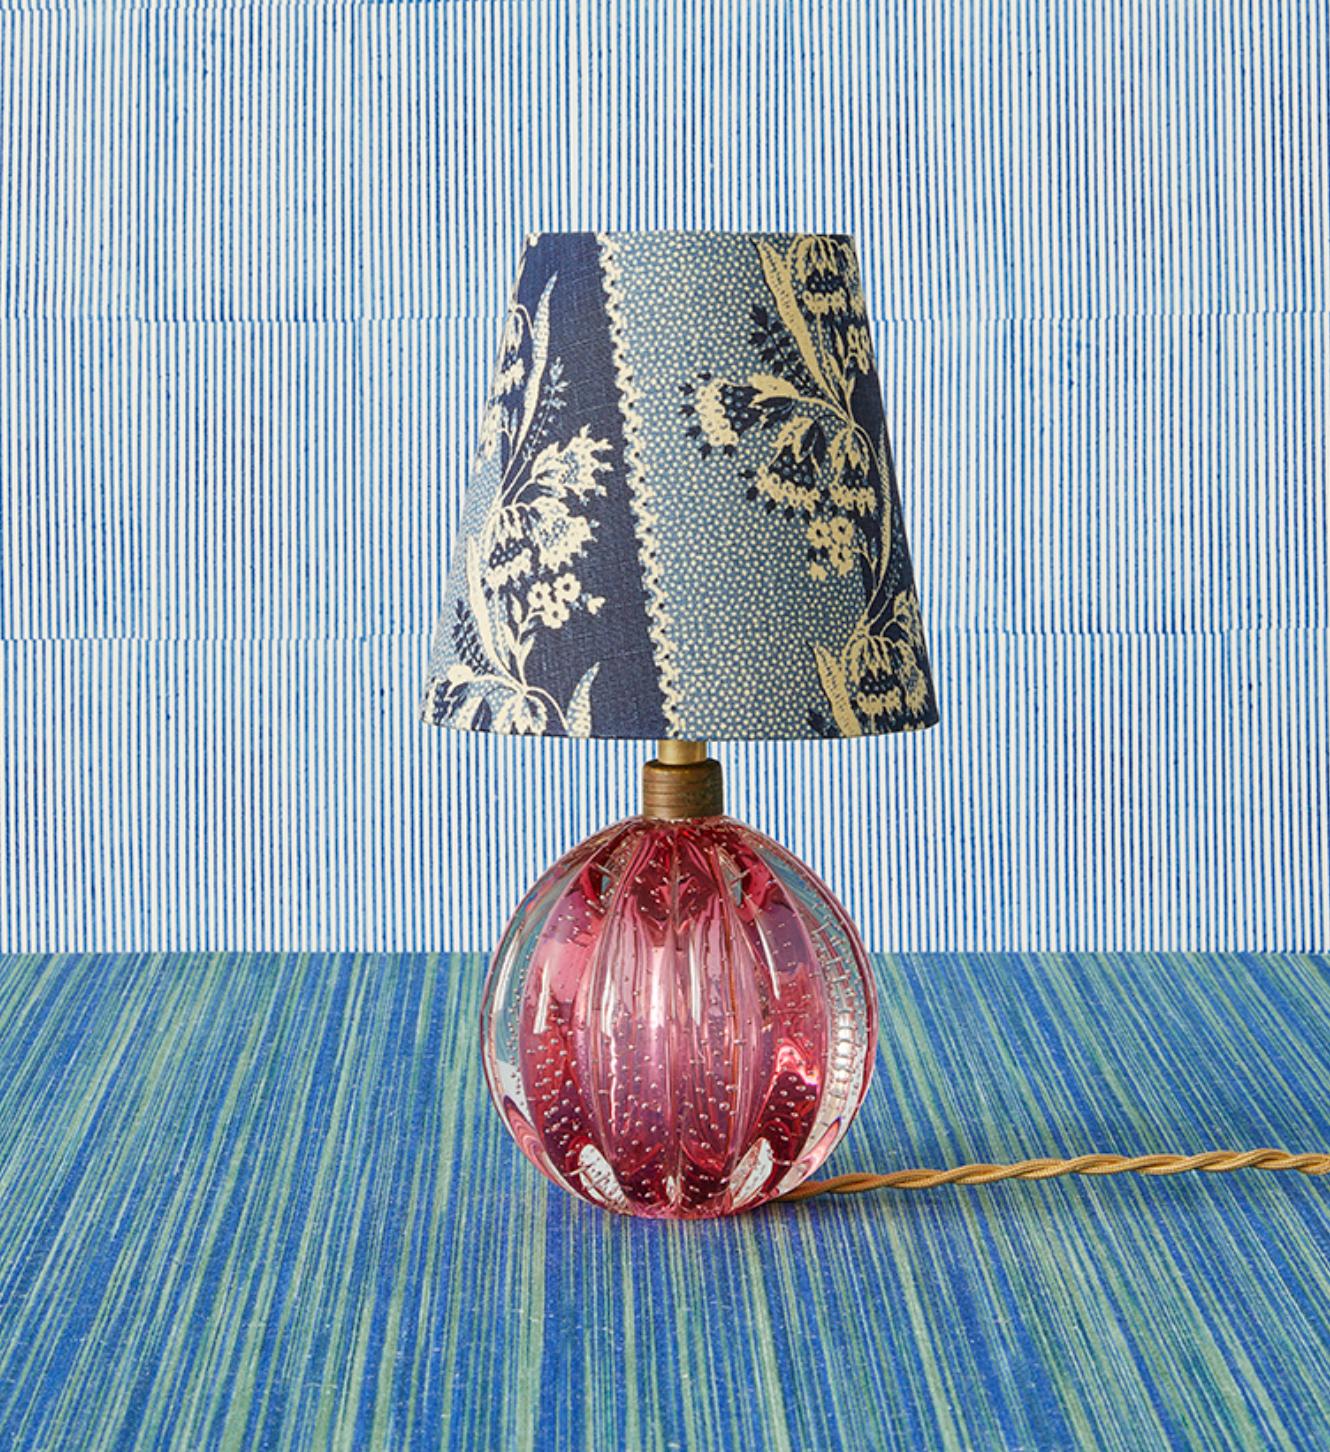 Italie, années 1950

Lampes de table Murano en verre rose avec abat-jour personnalisé par The Apartment.

H 29 x Ø 16 cm